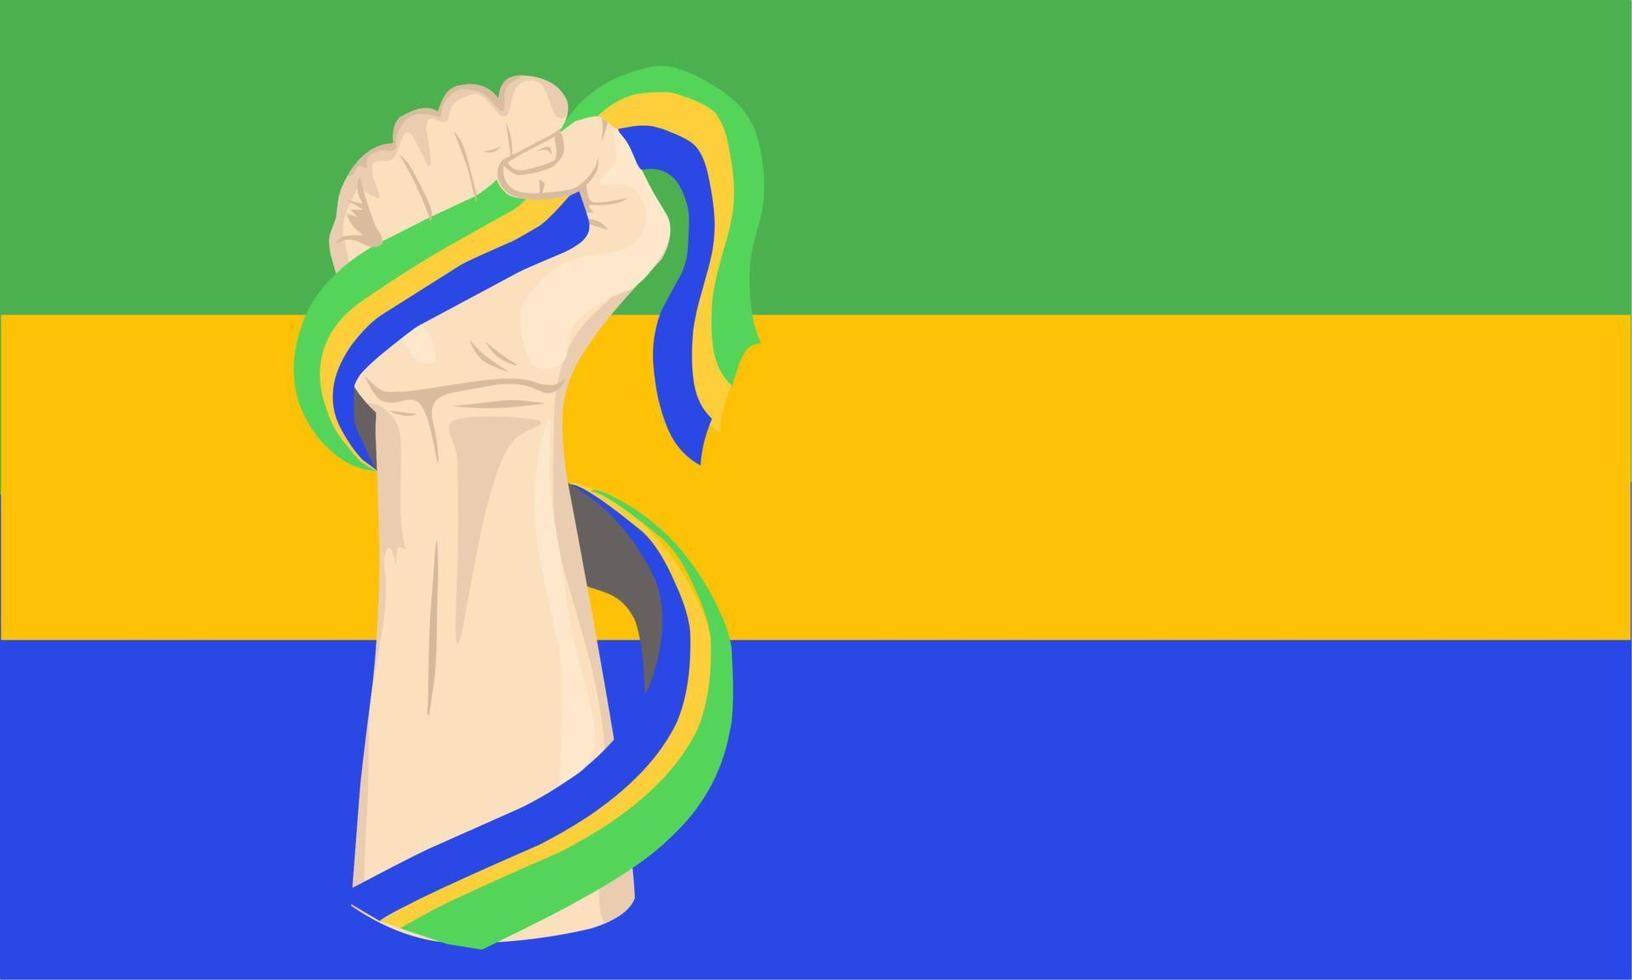 Illustrationsvektorgrafik des Gabun-Unabhängigkeitstags mit der Hand, die die Gabun-Flagge hält. perfekt für Feierlichkeiten zum Unabhängigkeitstag. Banner-Design vektor